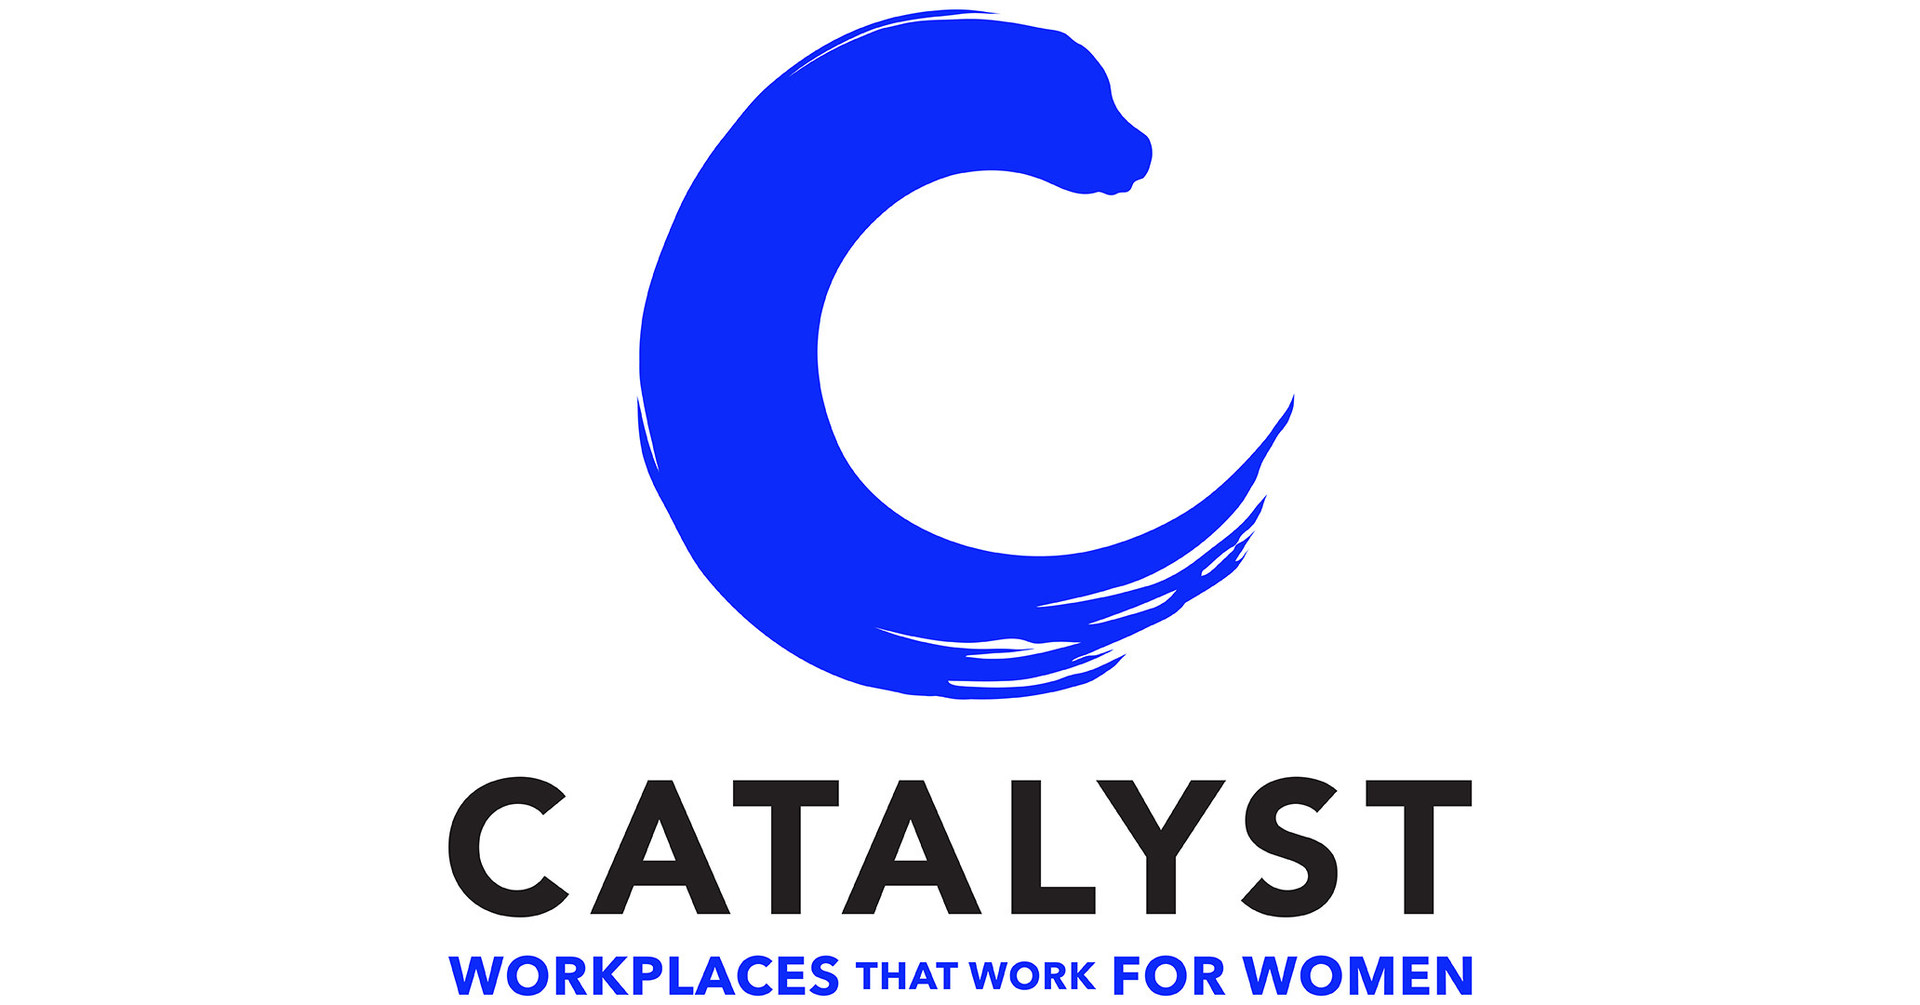 Catalyst plantea la empatía como habilidad empresarial en el Día Internacional de la Mujer